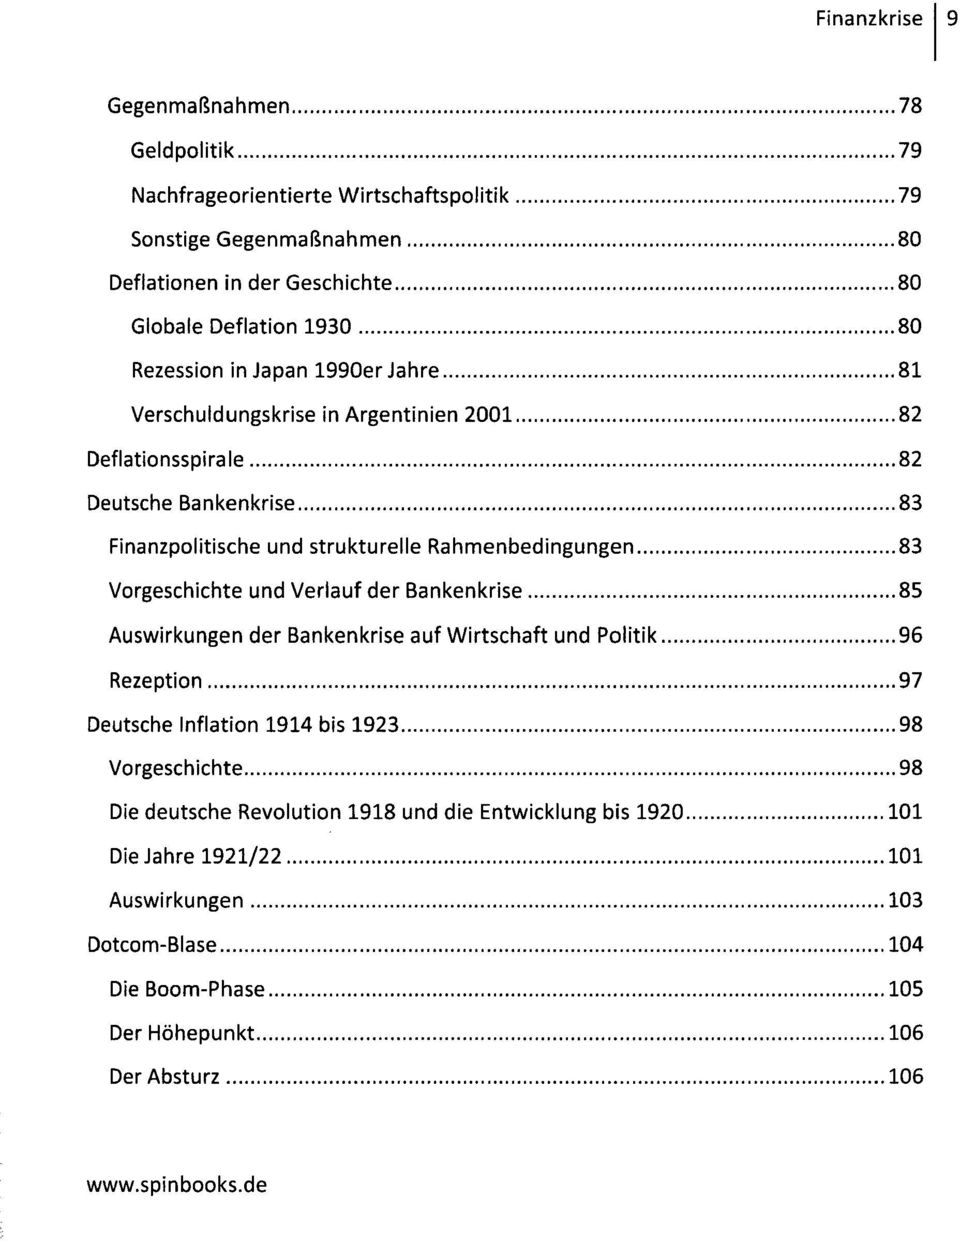 Rahmenbedingungen 83 Vorgeschichte und Verlauf der Bankenkrise 85 Auswirkungen der Bankenkrise auf Wirtschaft und Politik 96 Rezeption 97 Deutsche Inflation 1914 bis 1923